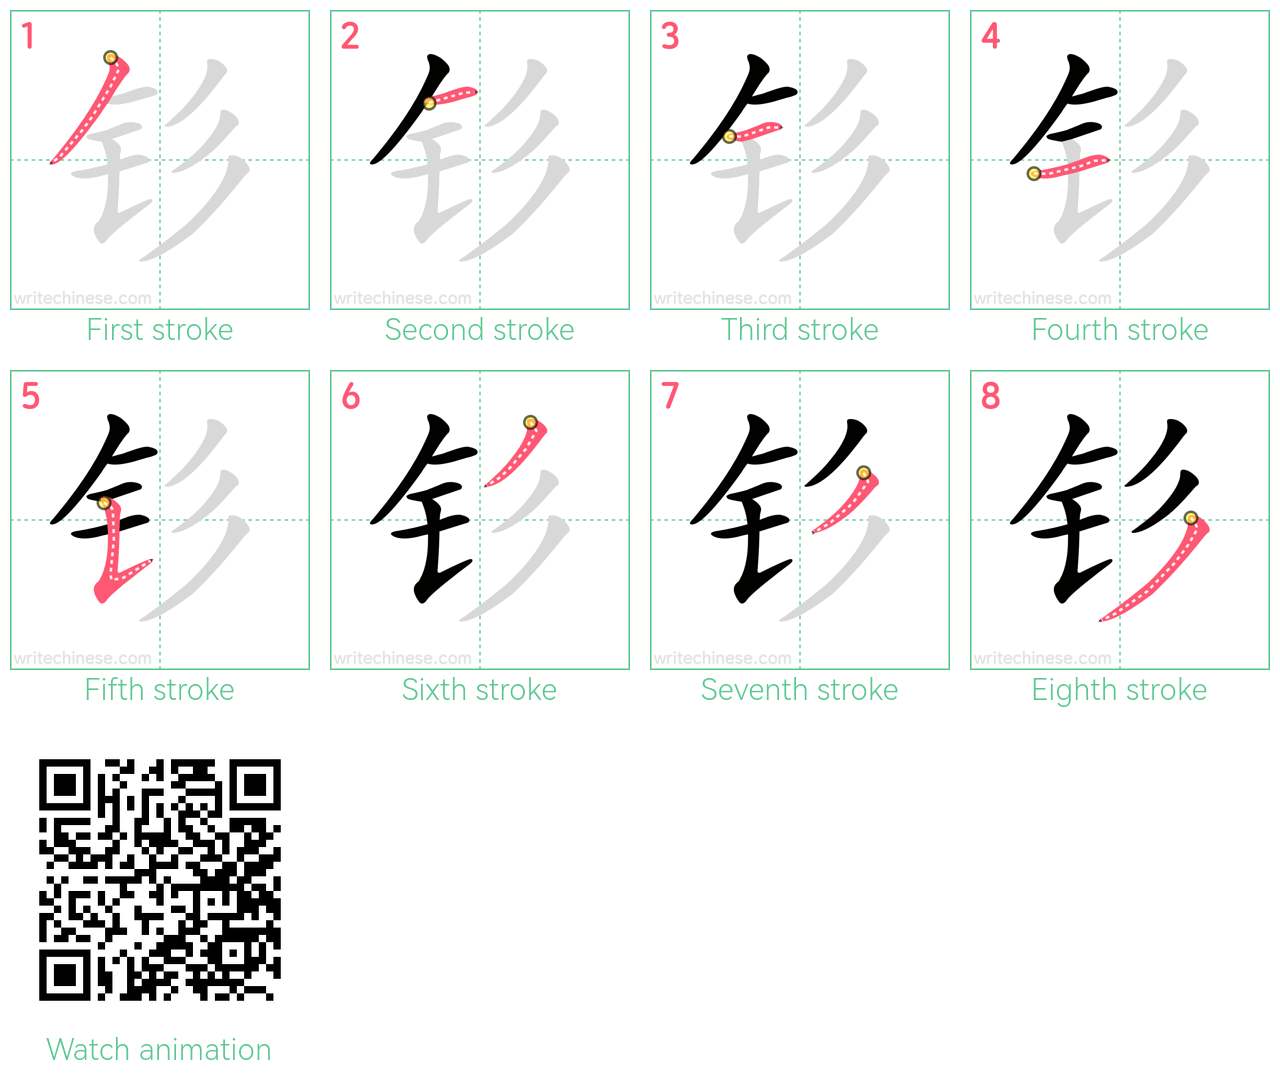 钐 step-by-step stroke order diagrams